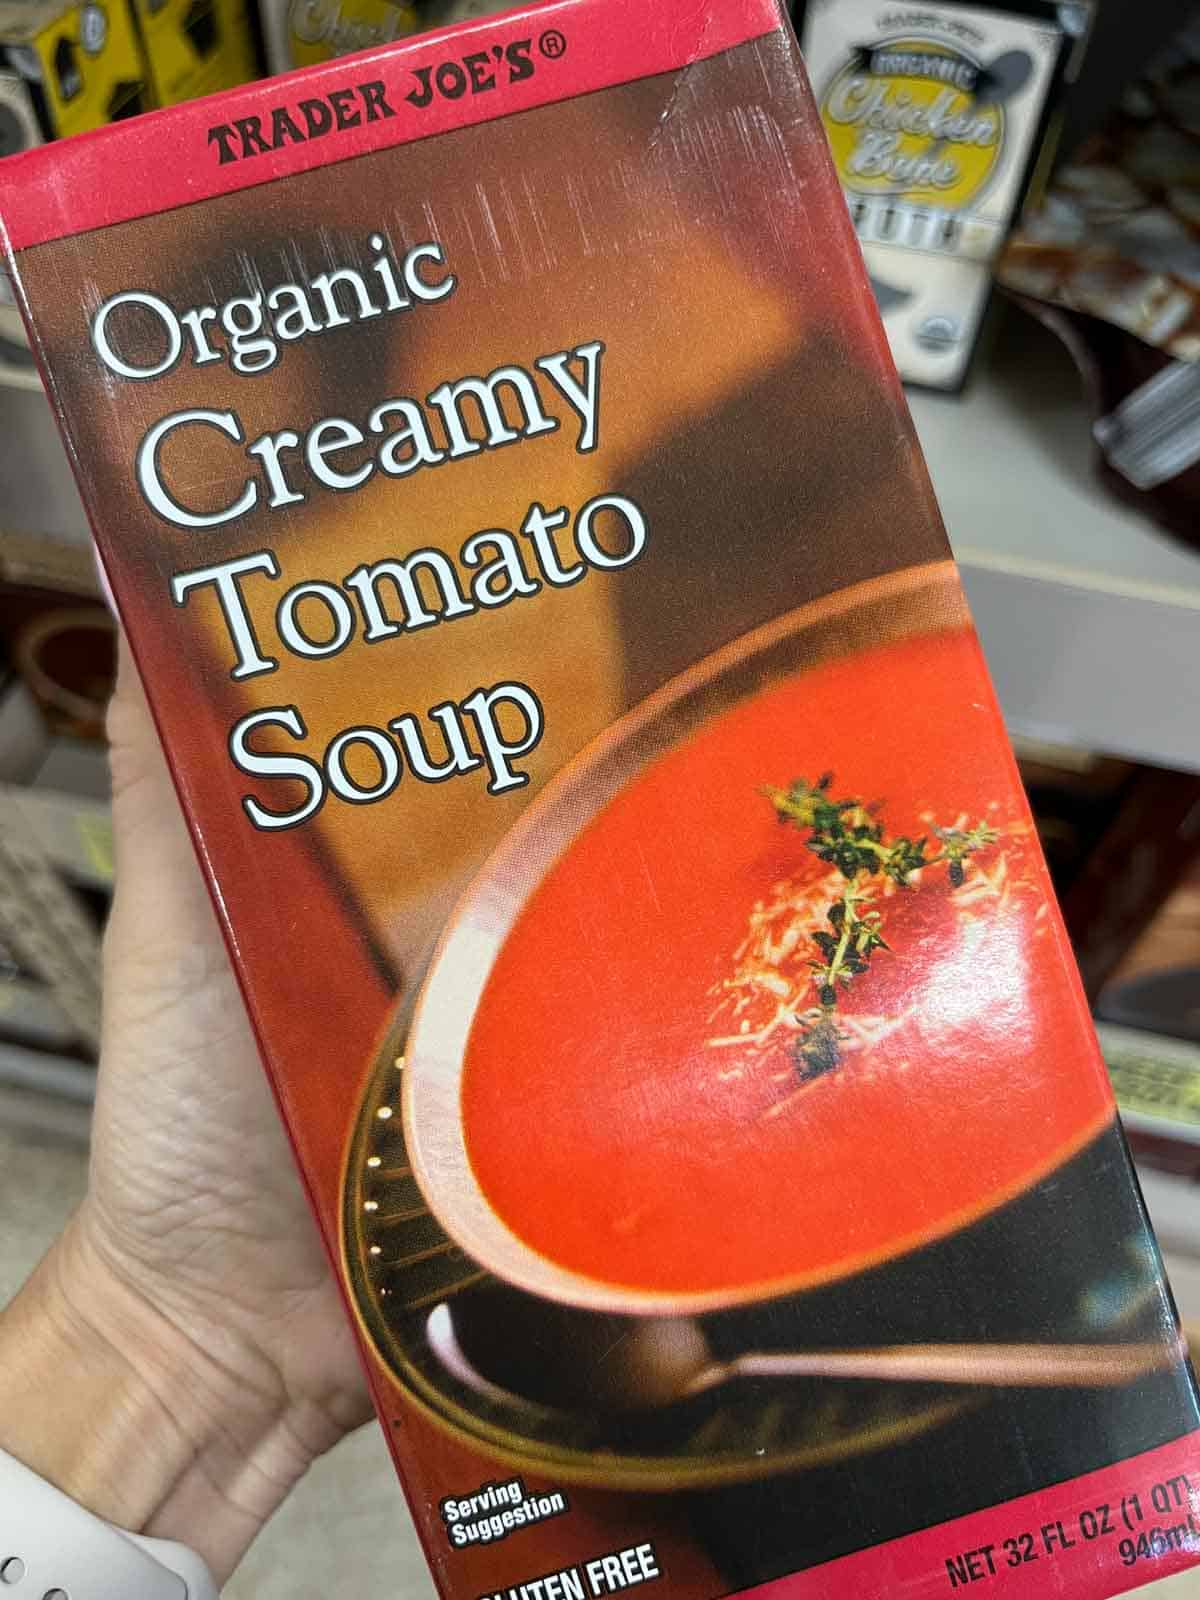 A carton of Trader Joe's creamy tomato soup.